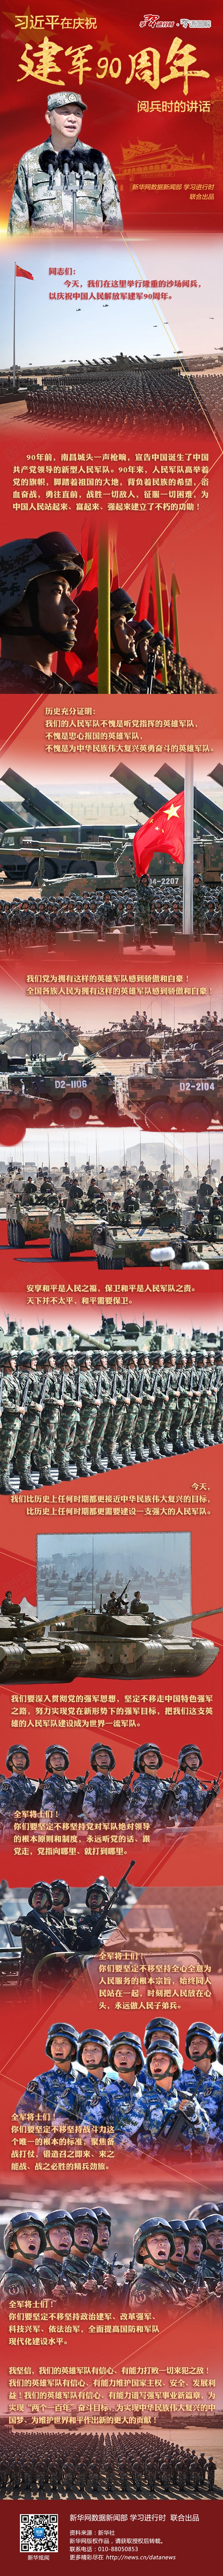 习语图解：习近平在庆祝建军90周年阅兵时的讲话